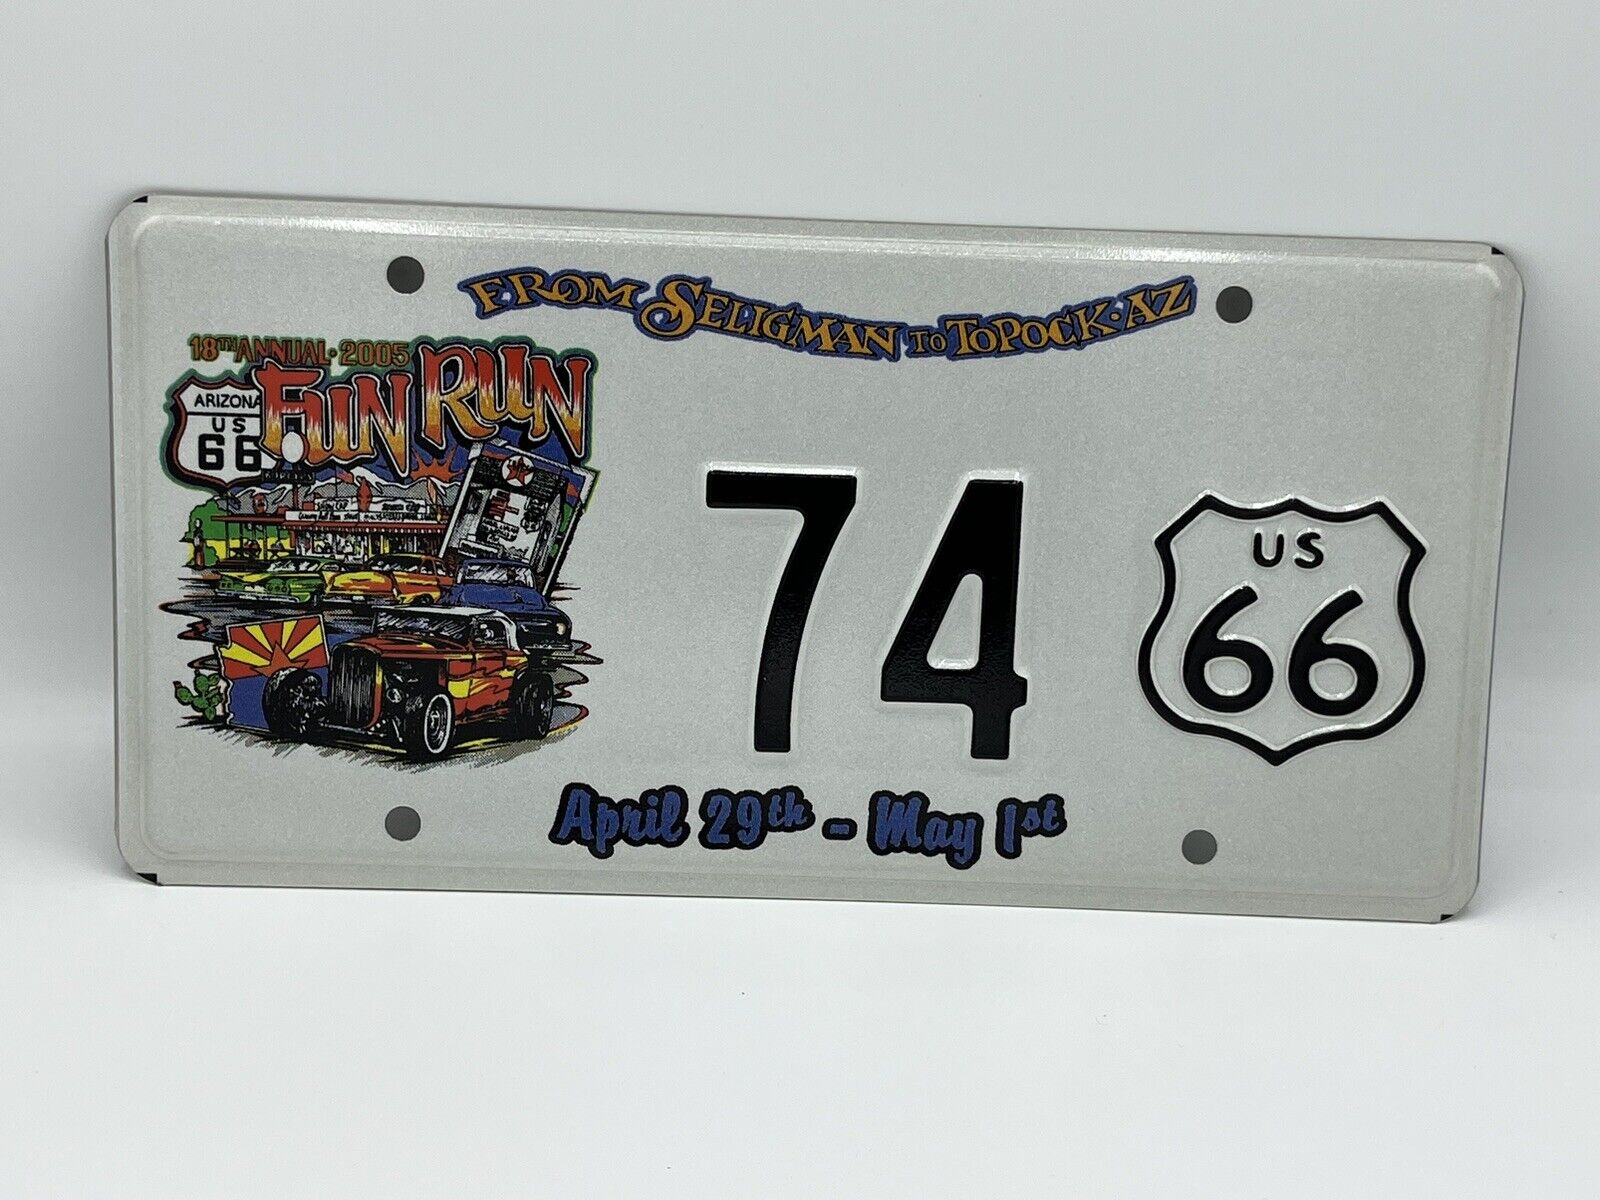 2005 Seligman to Topock Fun Run License Plate Historic Route 66 Arizona Cars